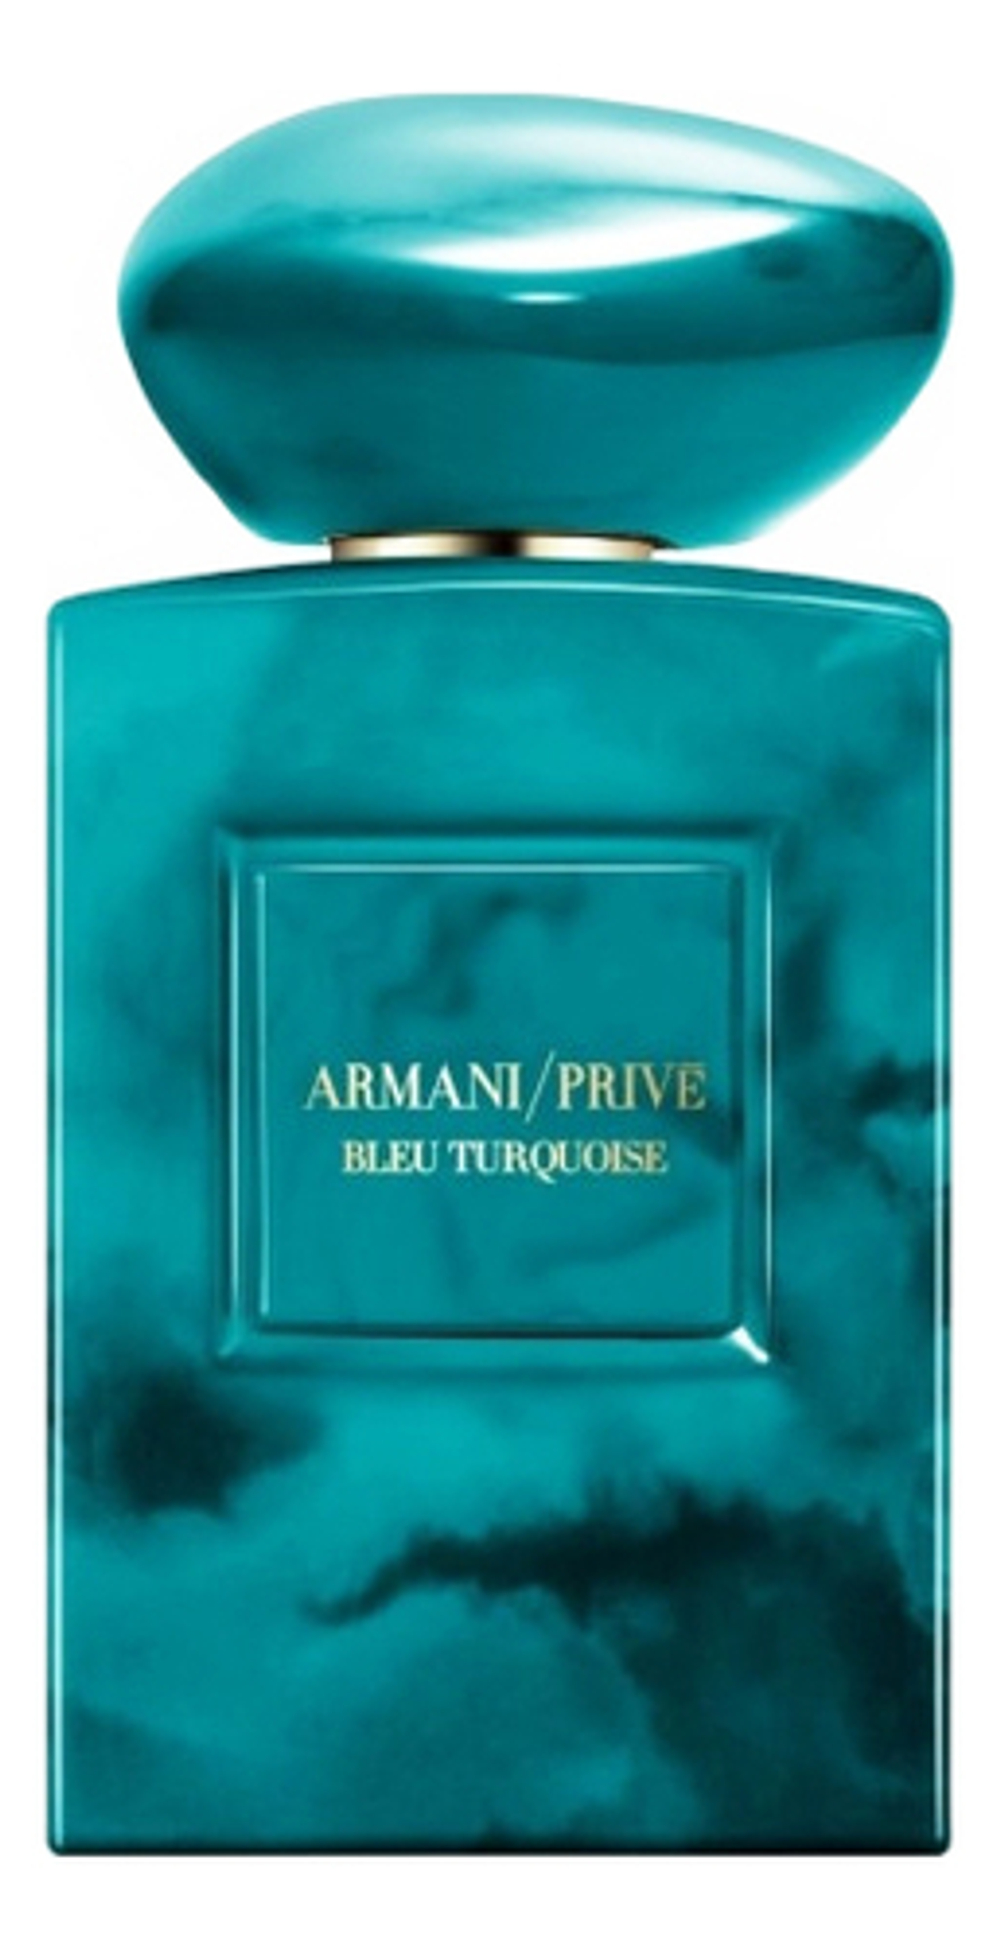 Armani Prive Bleu Turquoise